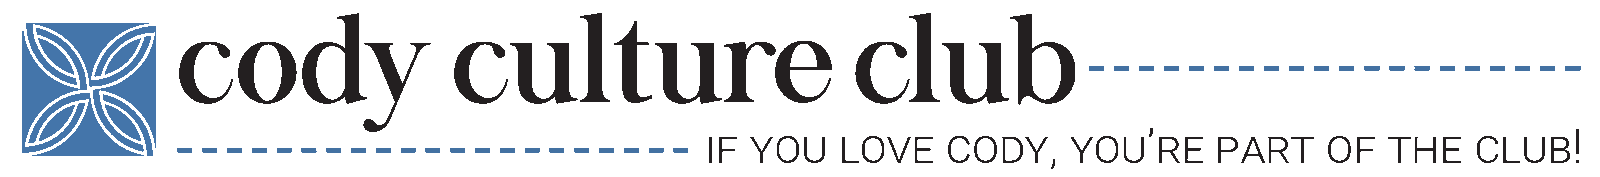 Cody Culture Club blue logo